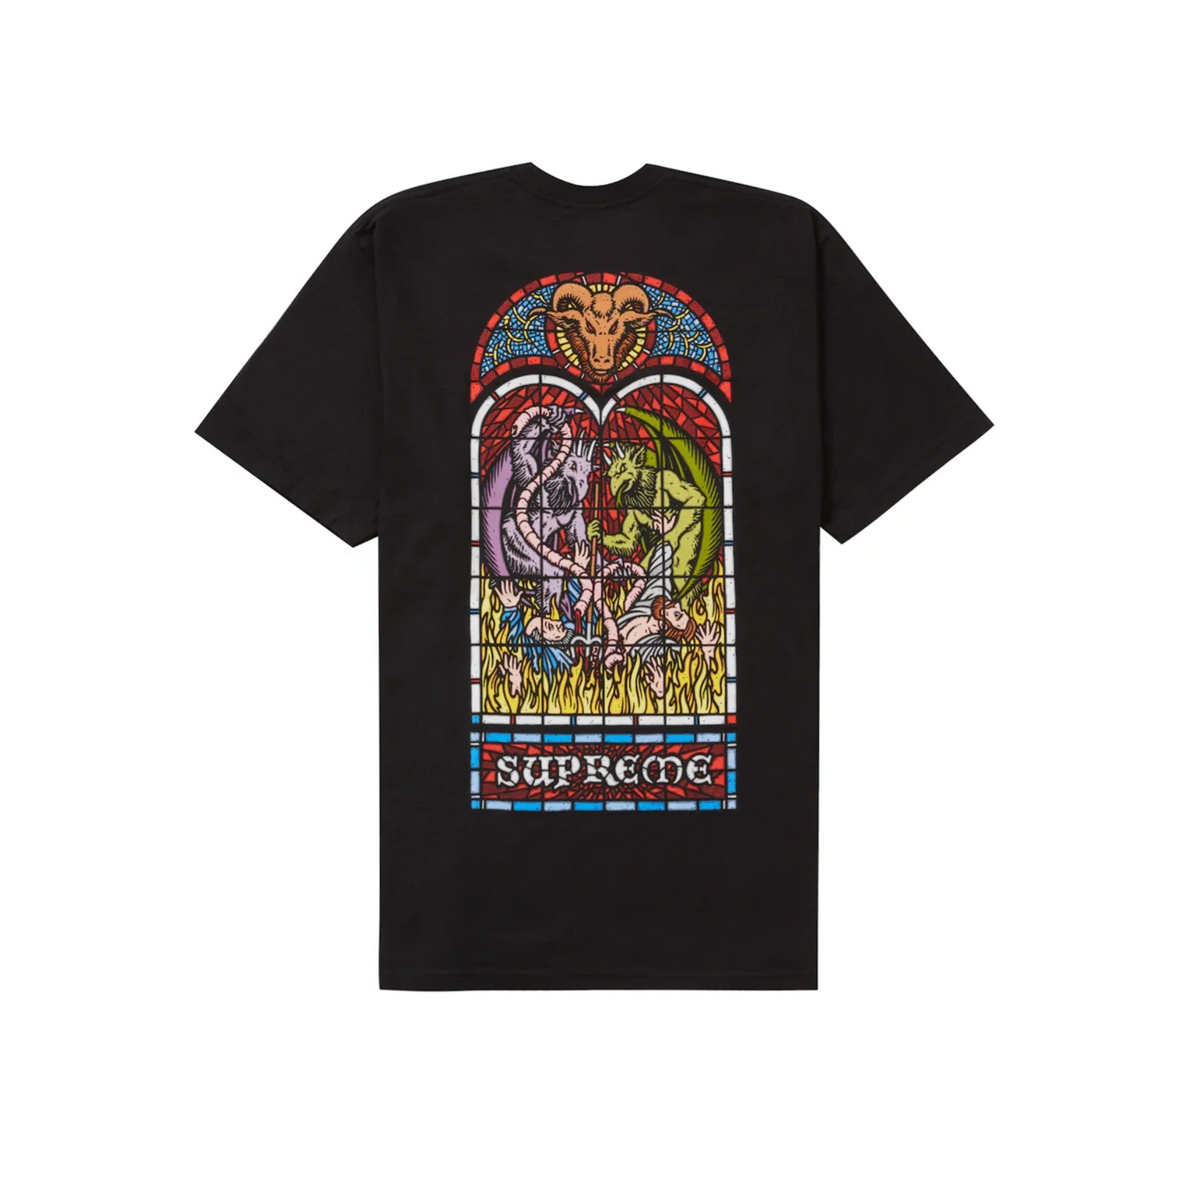 Supreme Worship T-shirt "Black"